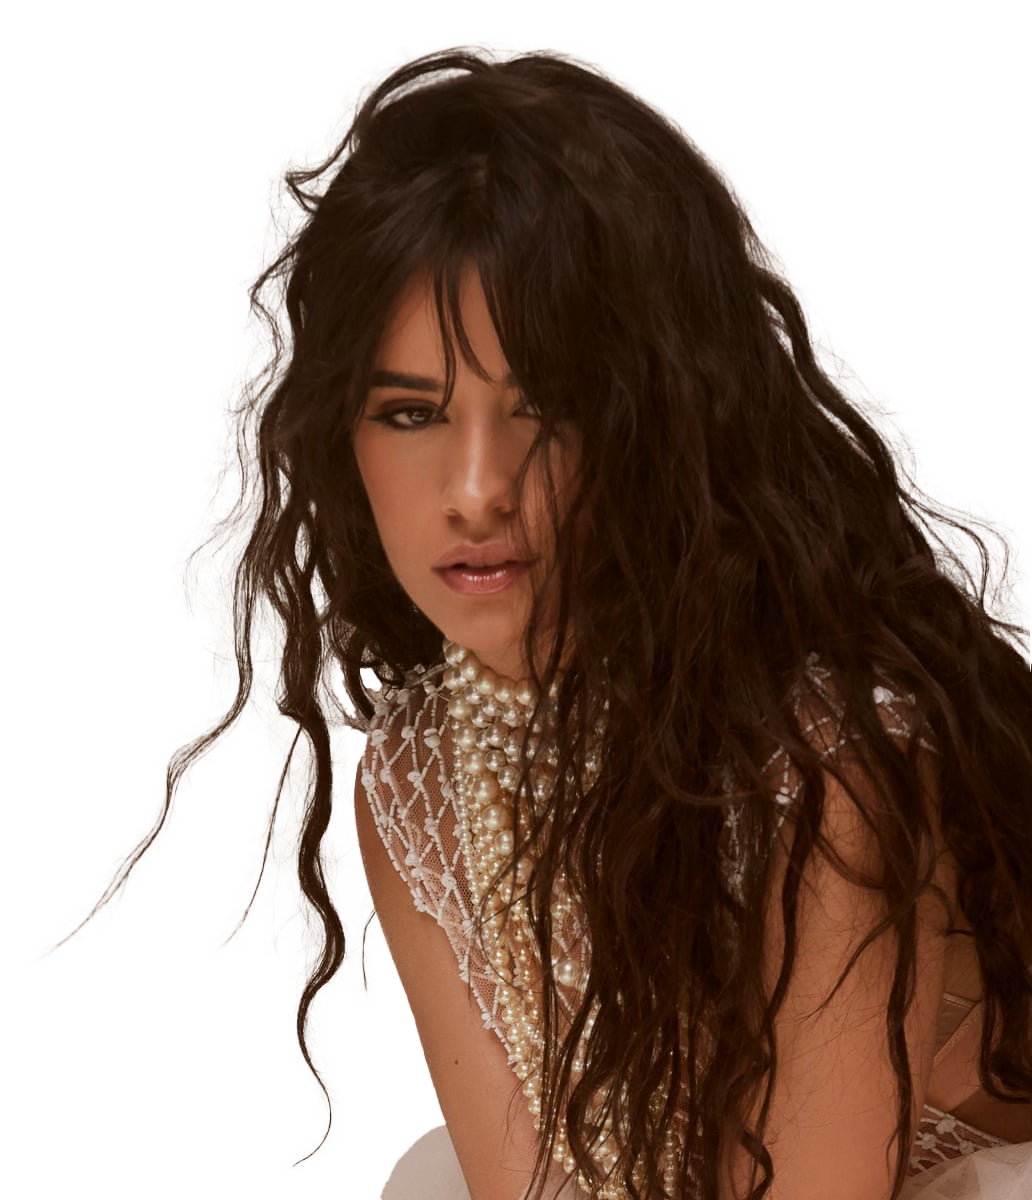 Sängerin Camila Cabello Hintergrund PNG-Bild